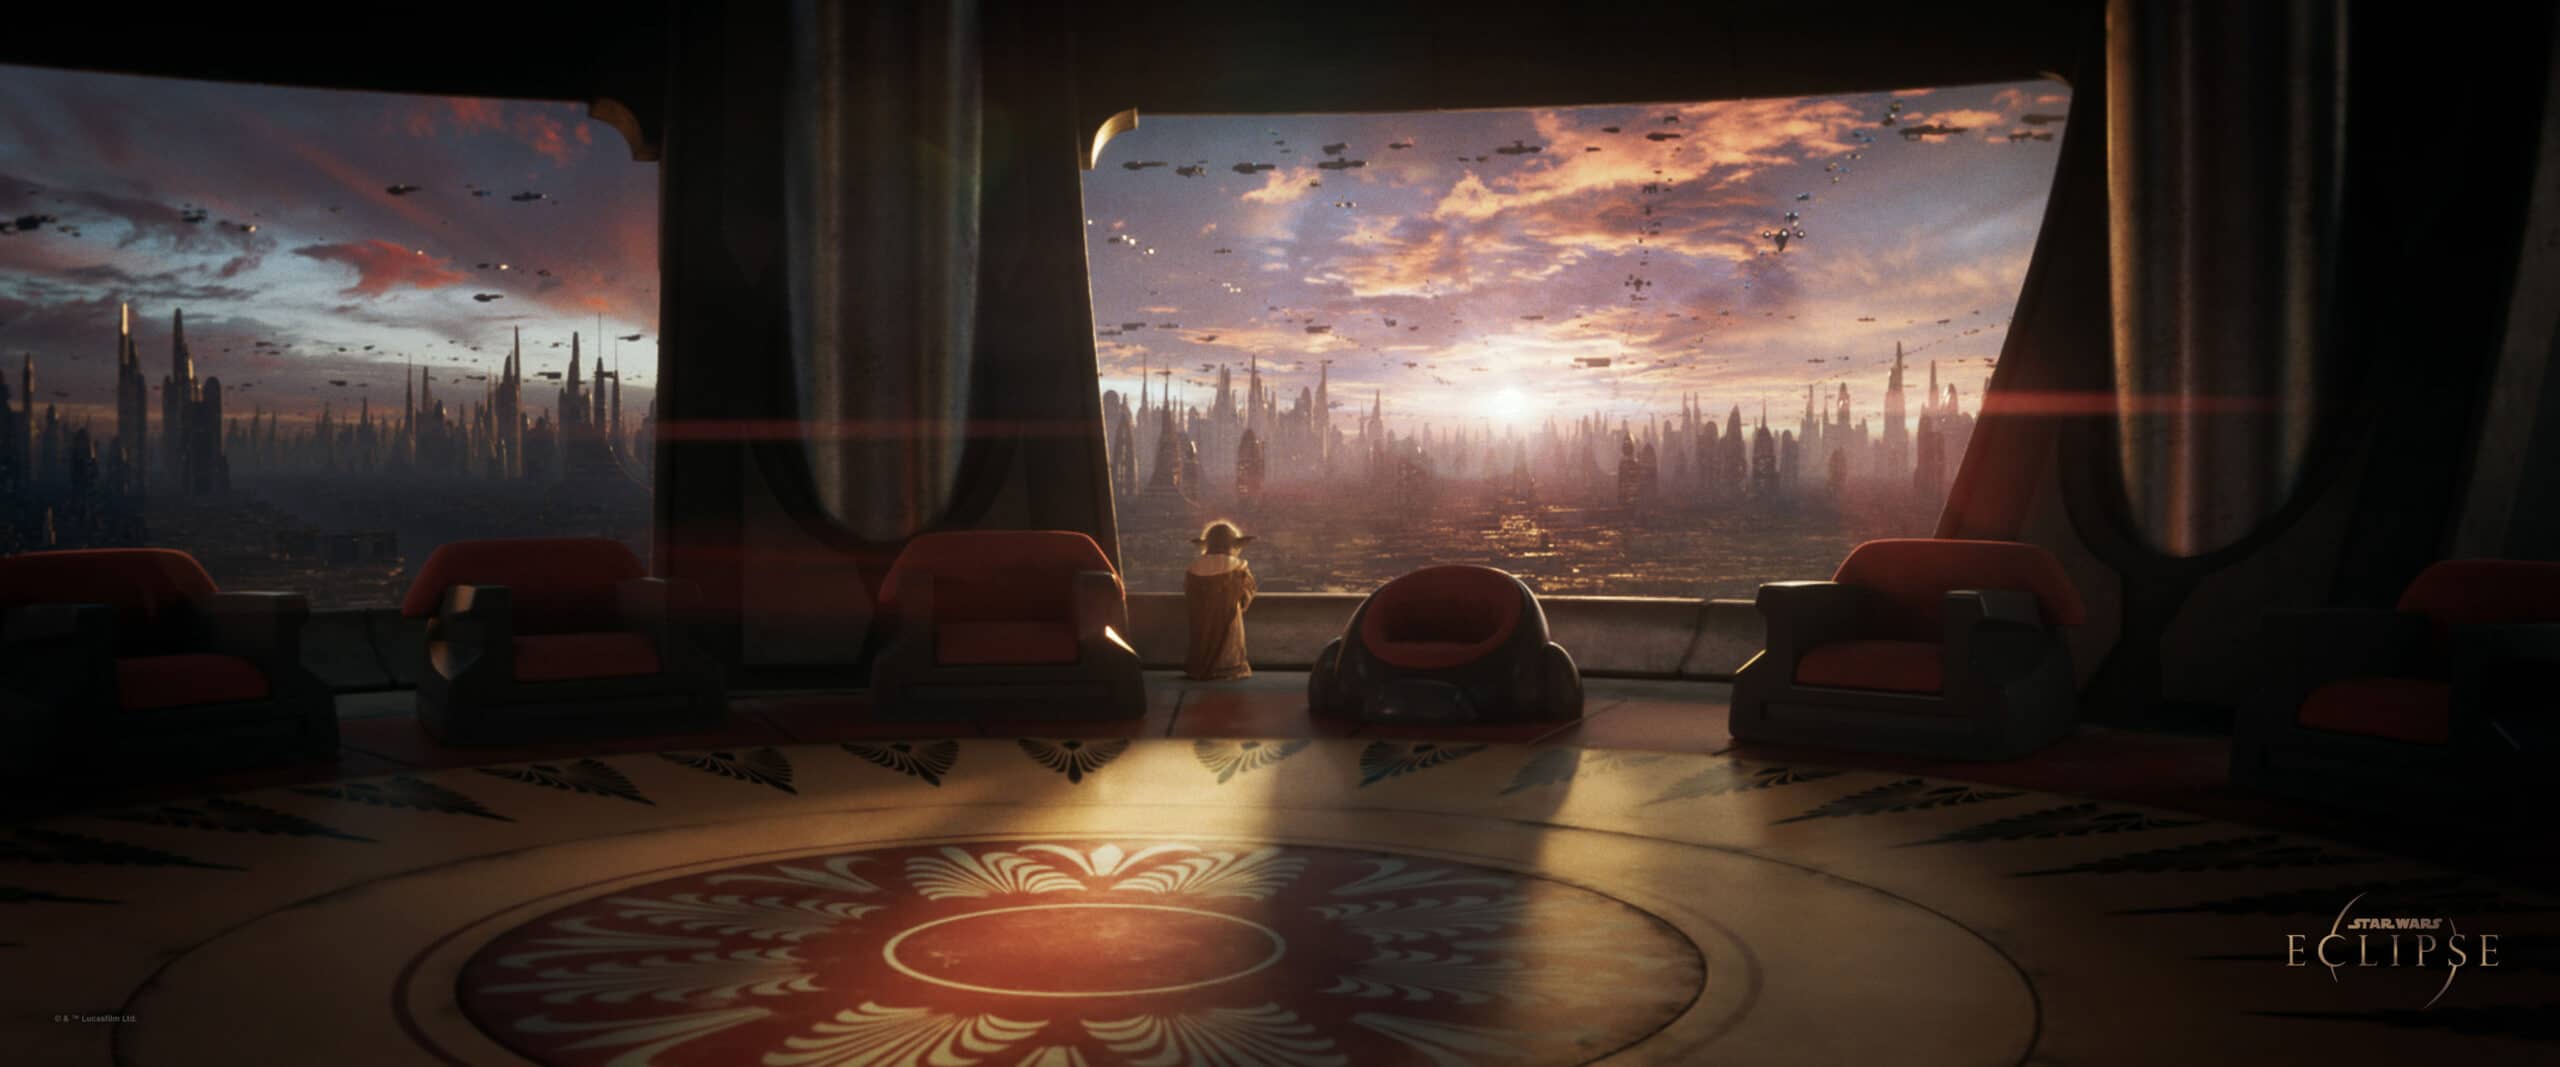 Auch im angekündigten Star Wars Eclipse spielt der Jedi-Orden eine Rolle (C) Quantic Dream